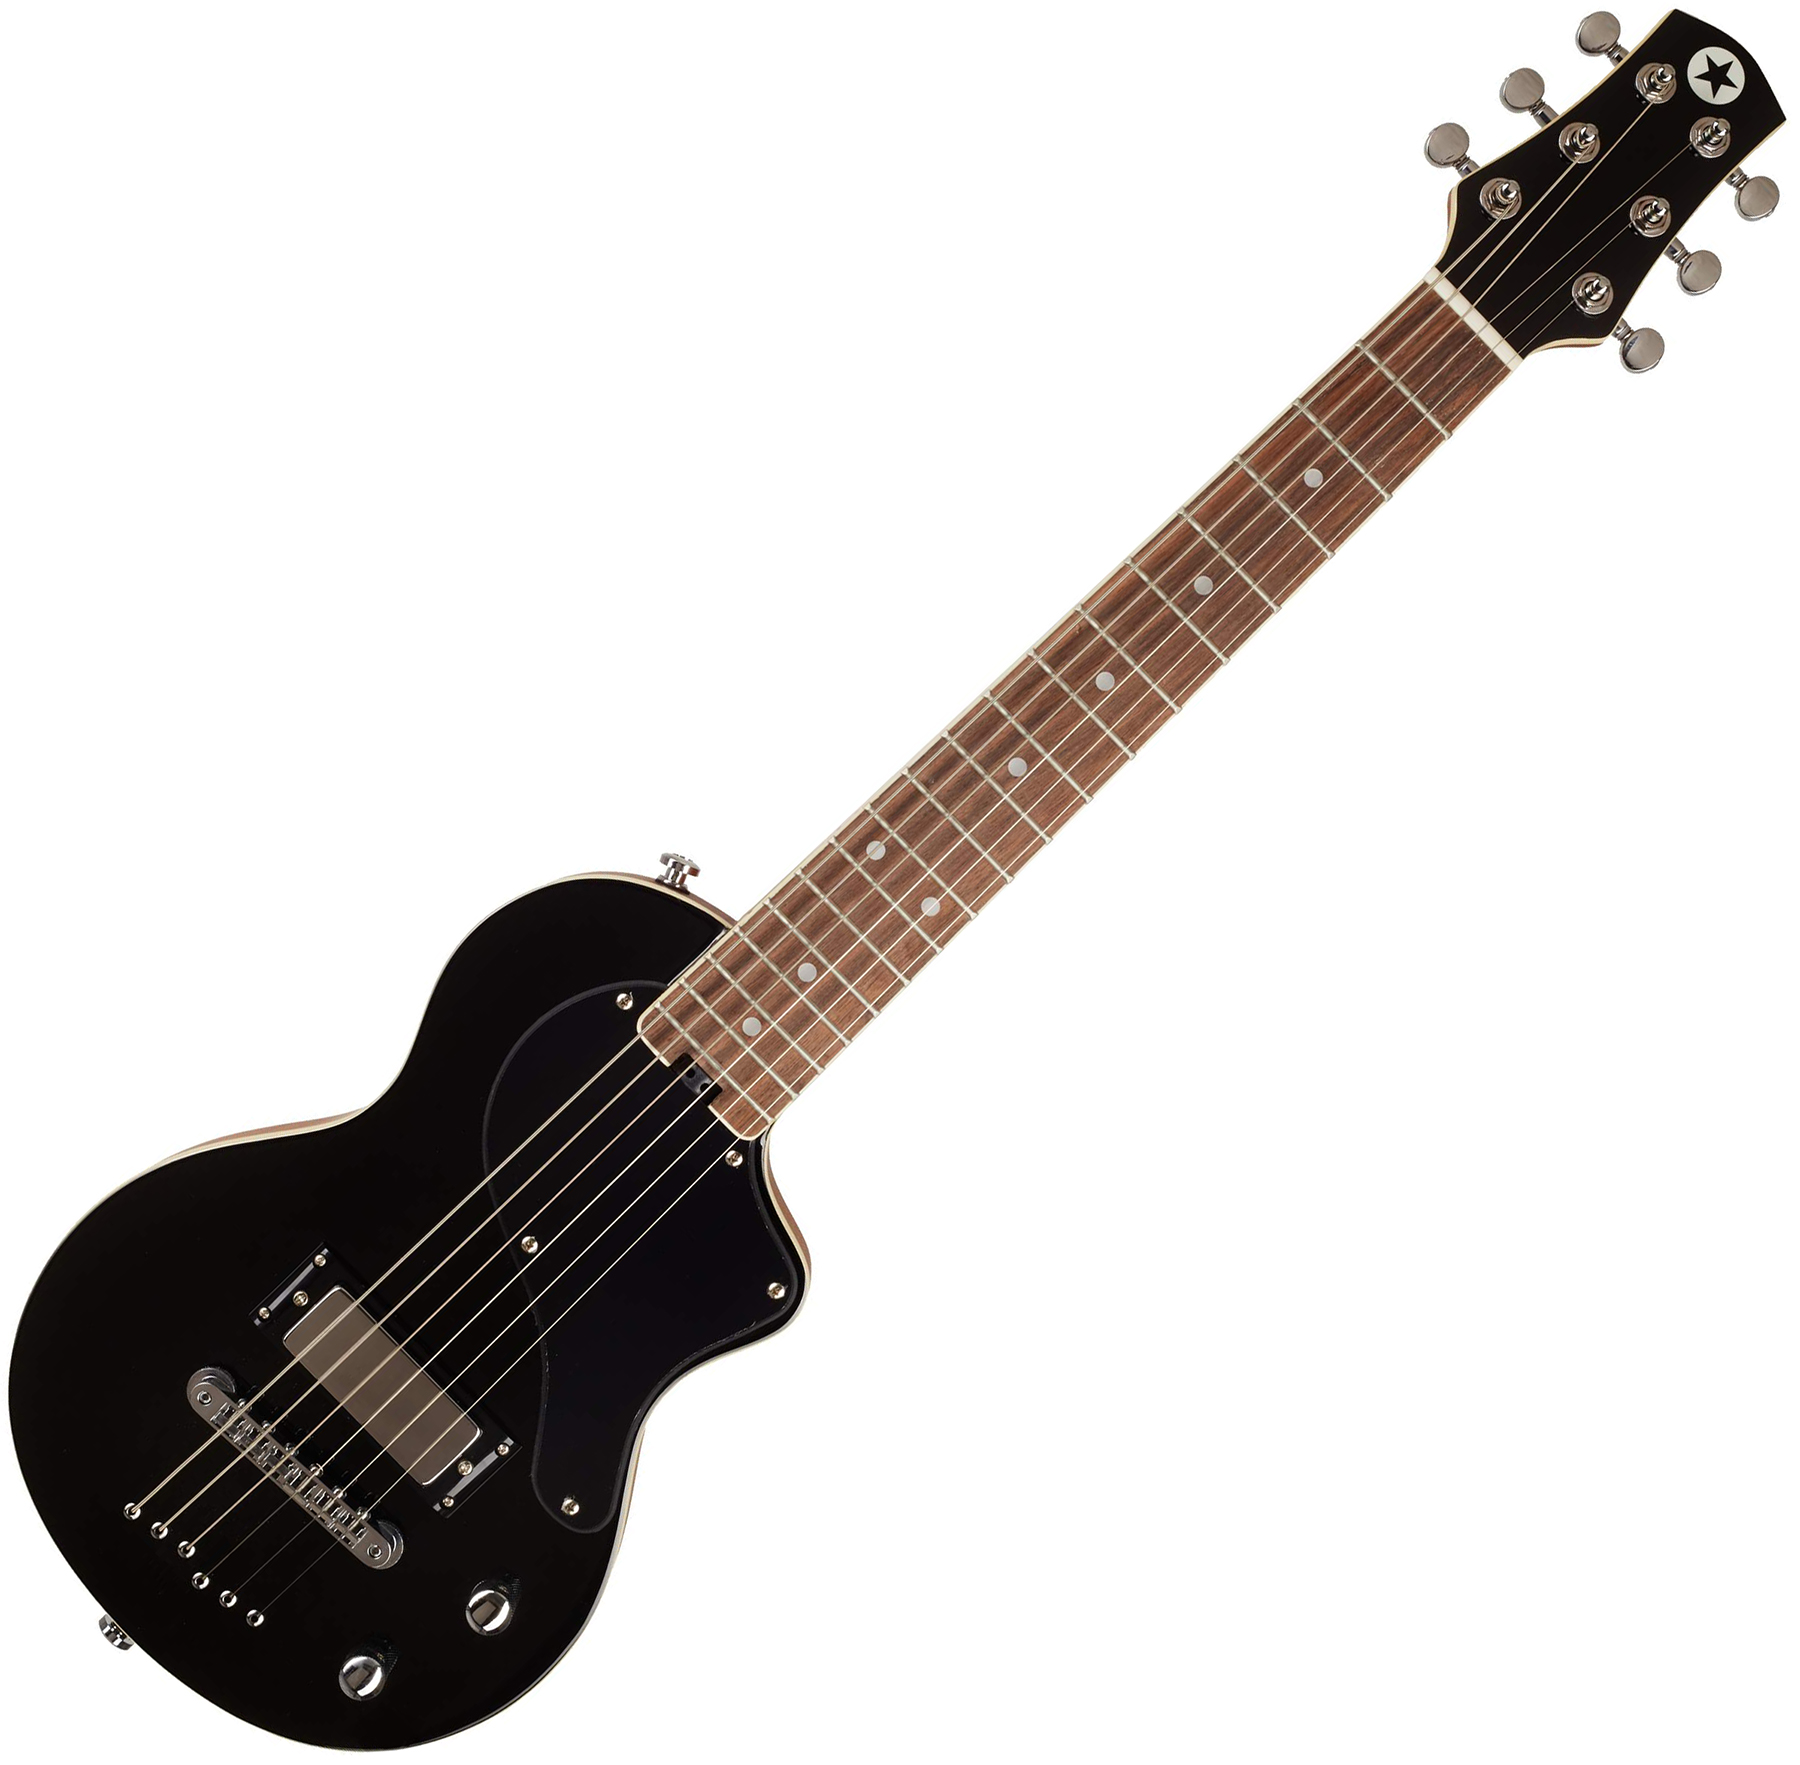 Blackstar Carry-on Travel Guitar Standard Pack +amplug2 Fly +housse - Jet Black - Pack Guitare Électrique - Variation 1